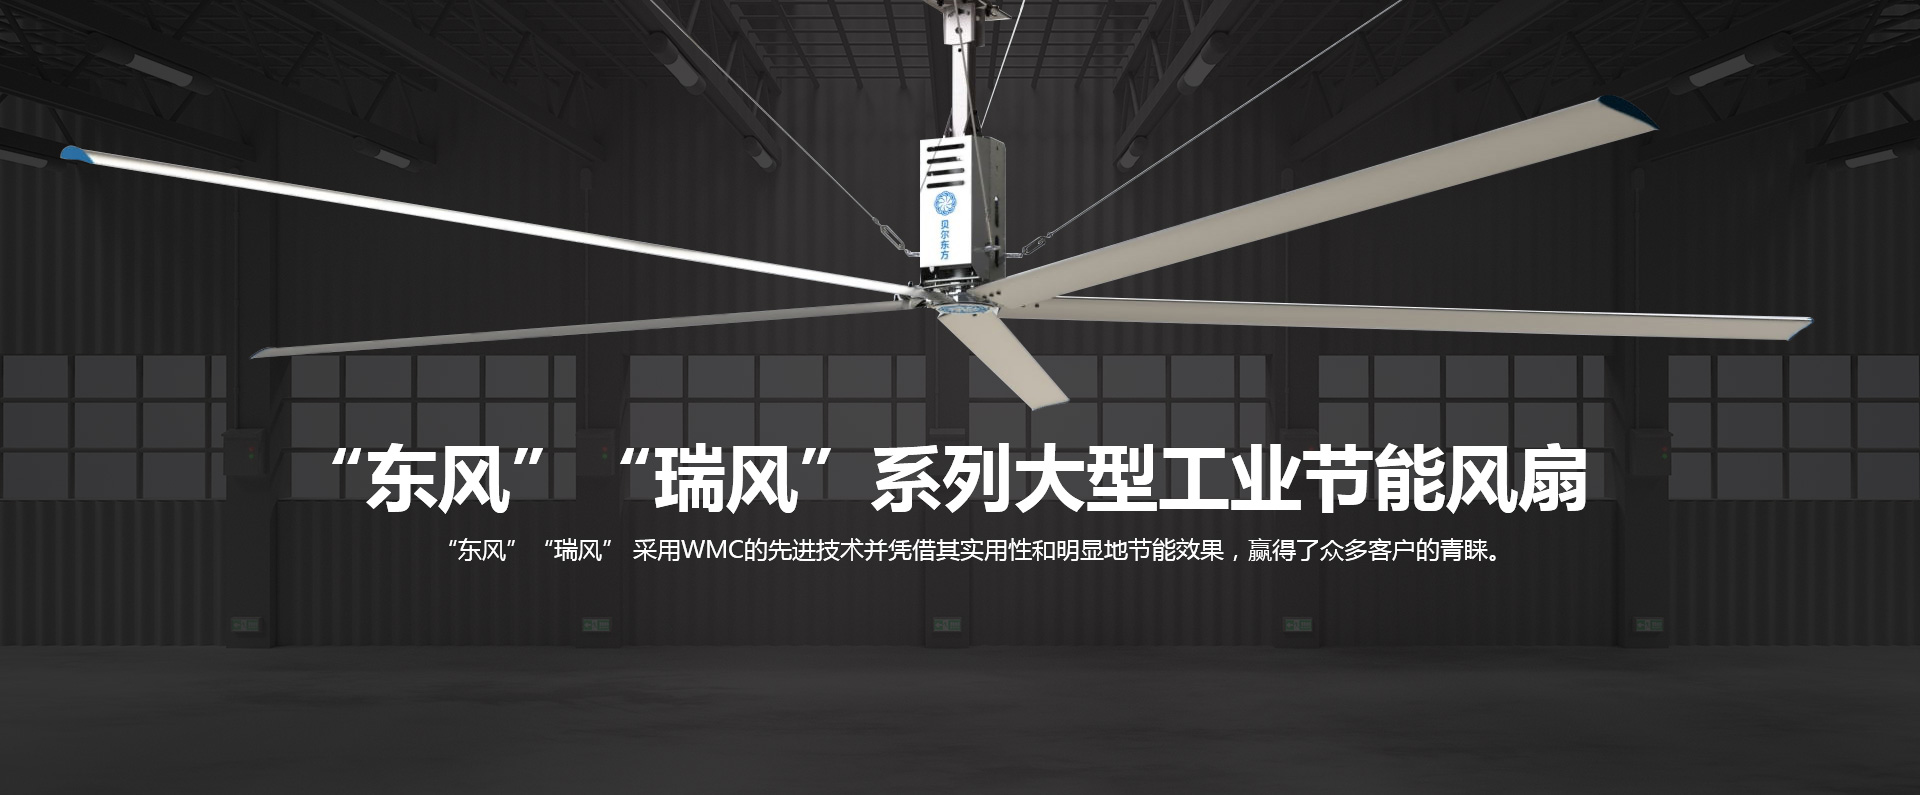 “东风” “瑞风”系列大型工业节能风扇